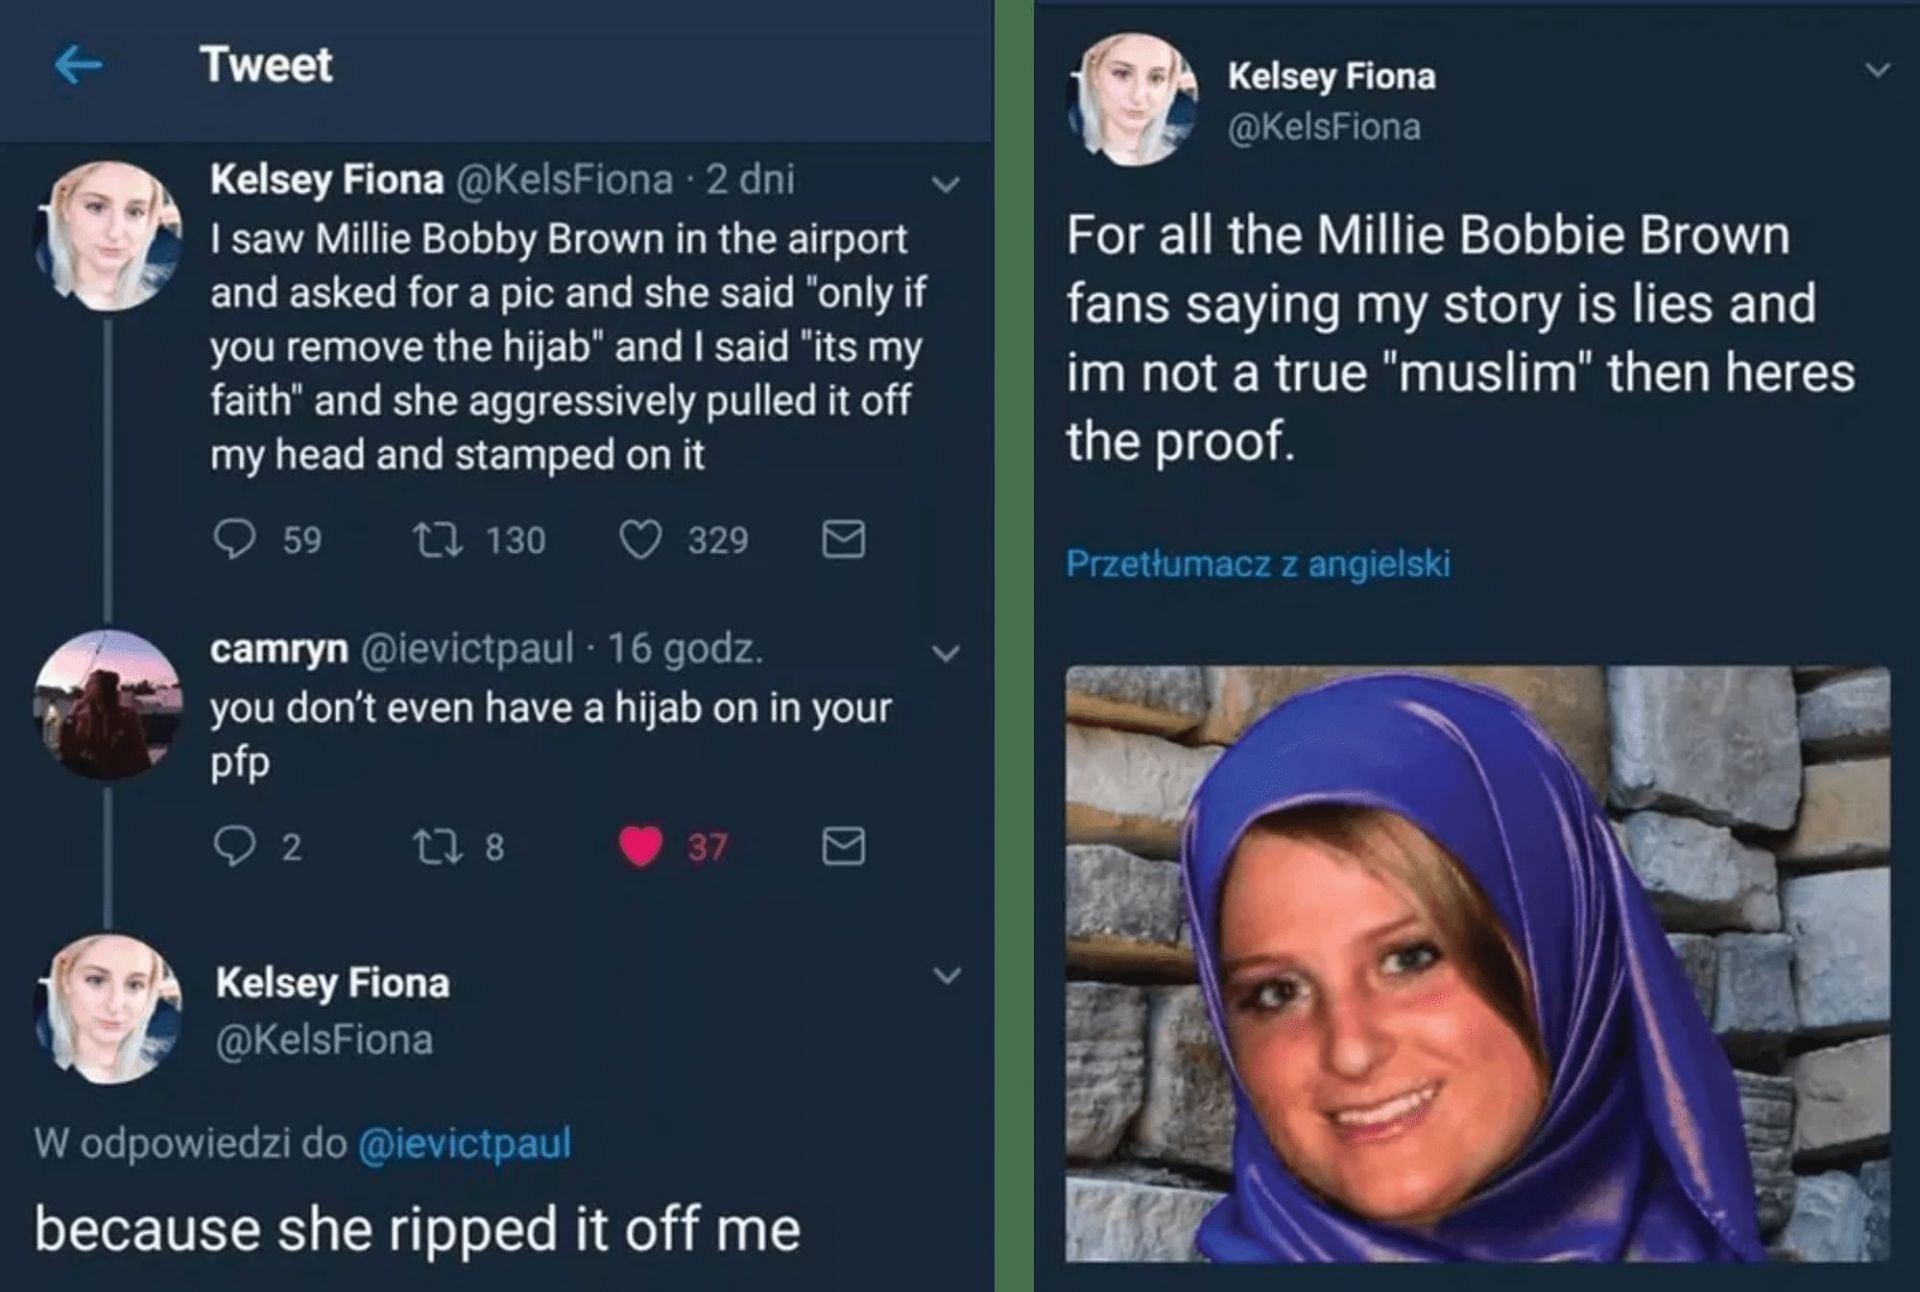 Tweet against Millie Bobby Brown (Image via Twitter)